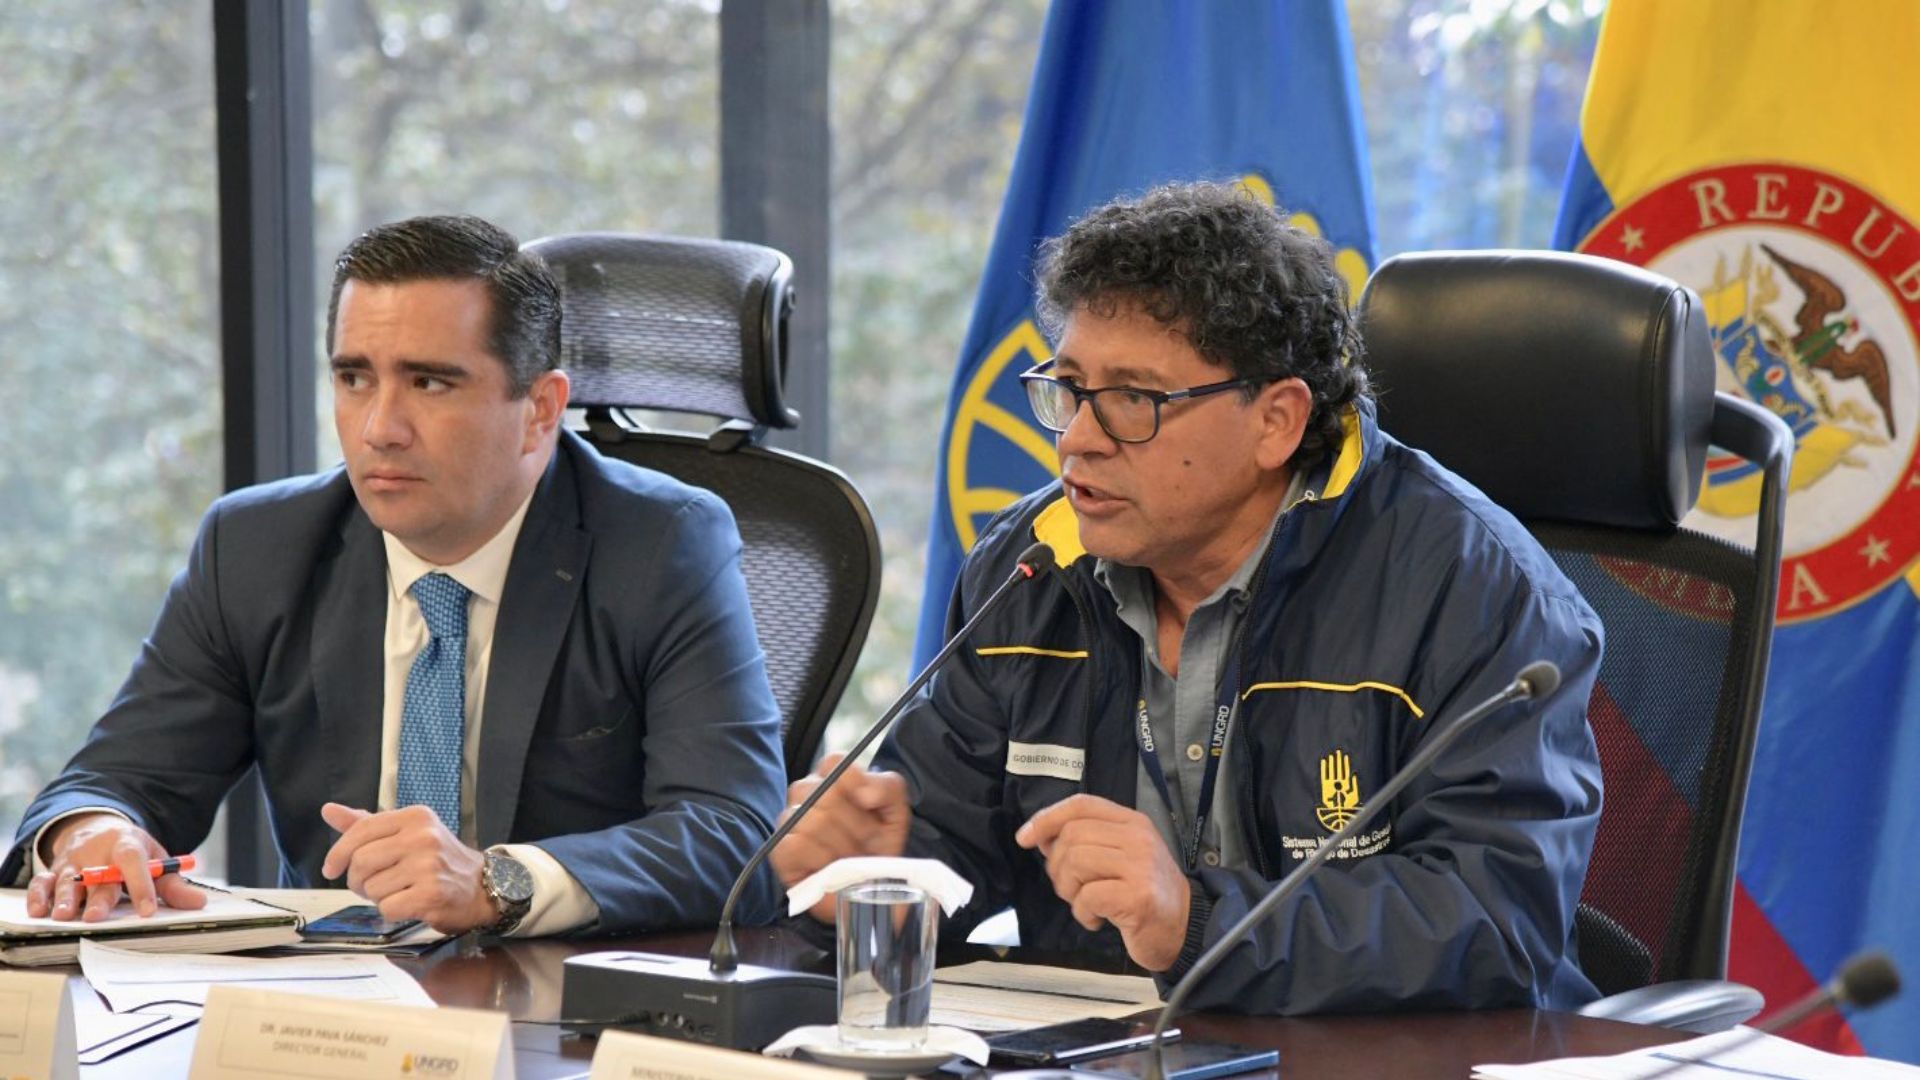 El nuevo director habló sobre las irregularidades en la contratación para la reconstrucción de la isla de Providencia en el Caribe colombiano